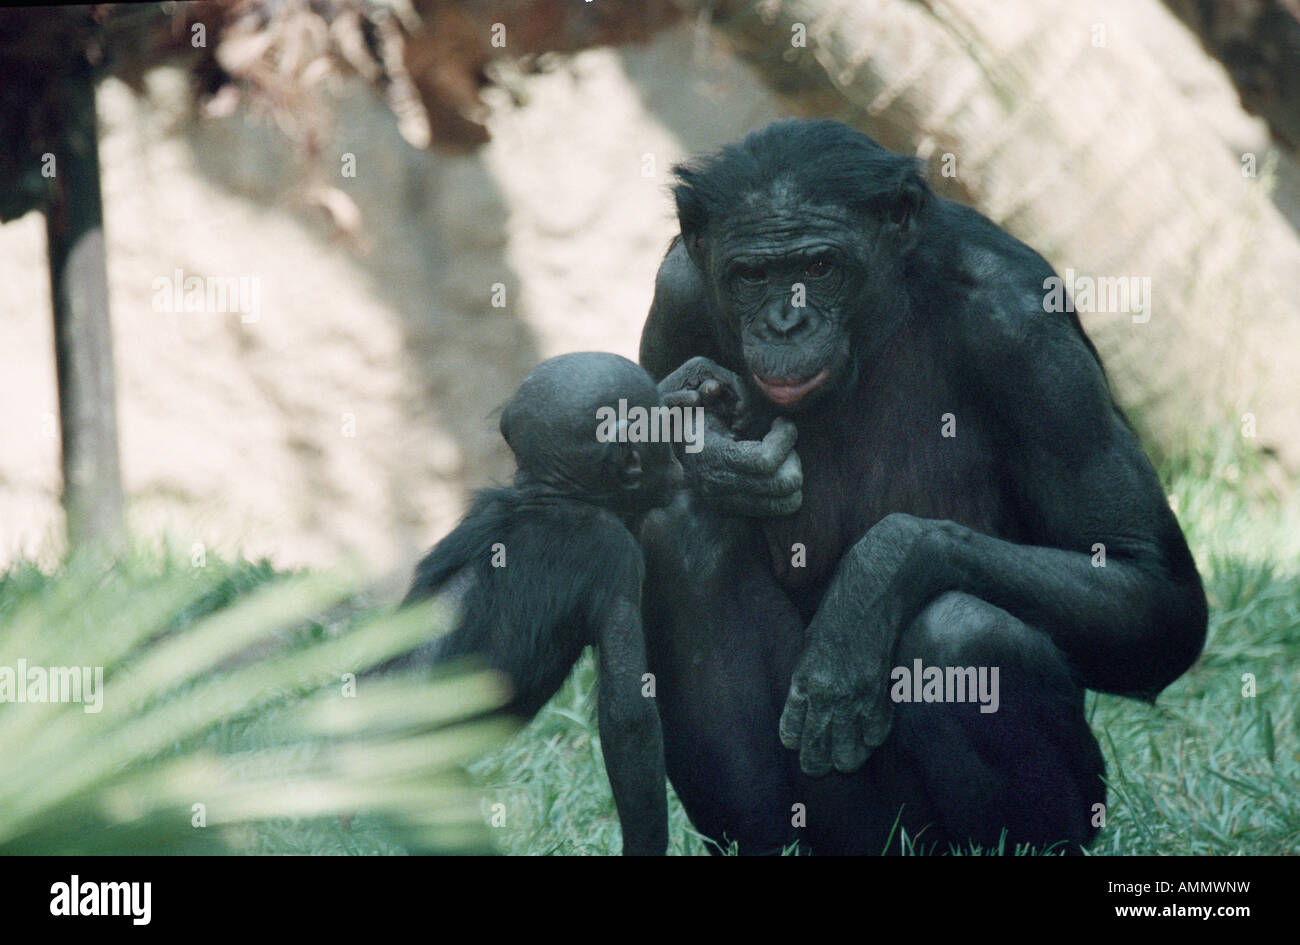 PAN PANISCUS MINACCIATE RF TROPICALE ZAIRE CONGO scimpanzé pigmeo Zaire animali animali bonobo bonobos chimp scimpanzé scimpanzé en Foto Stock